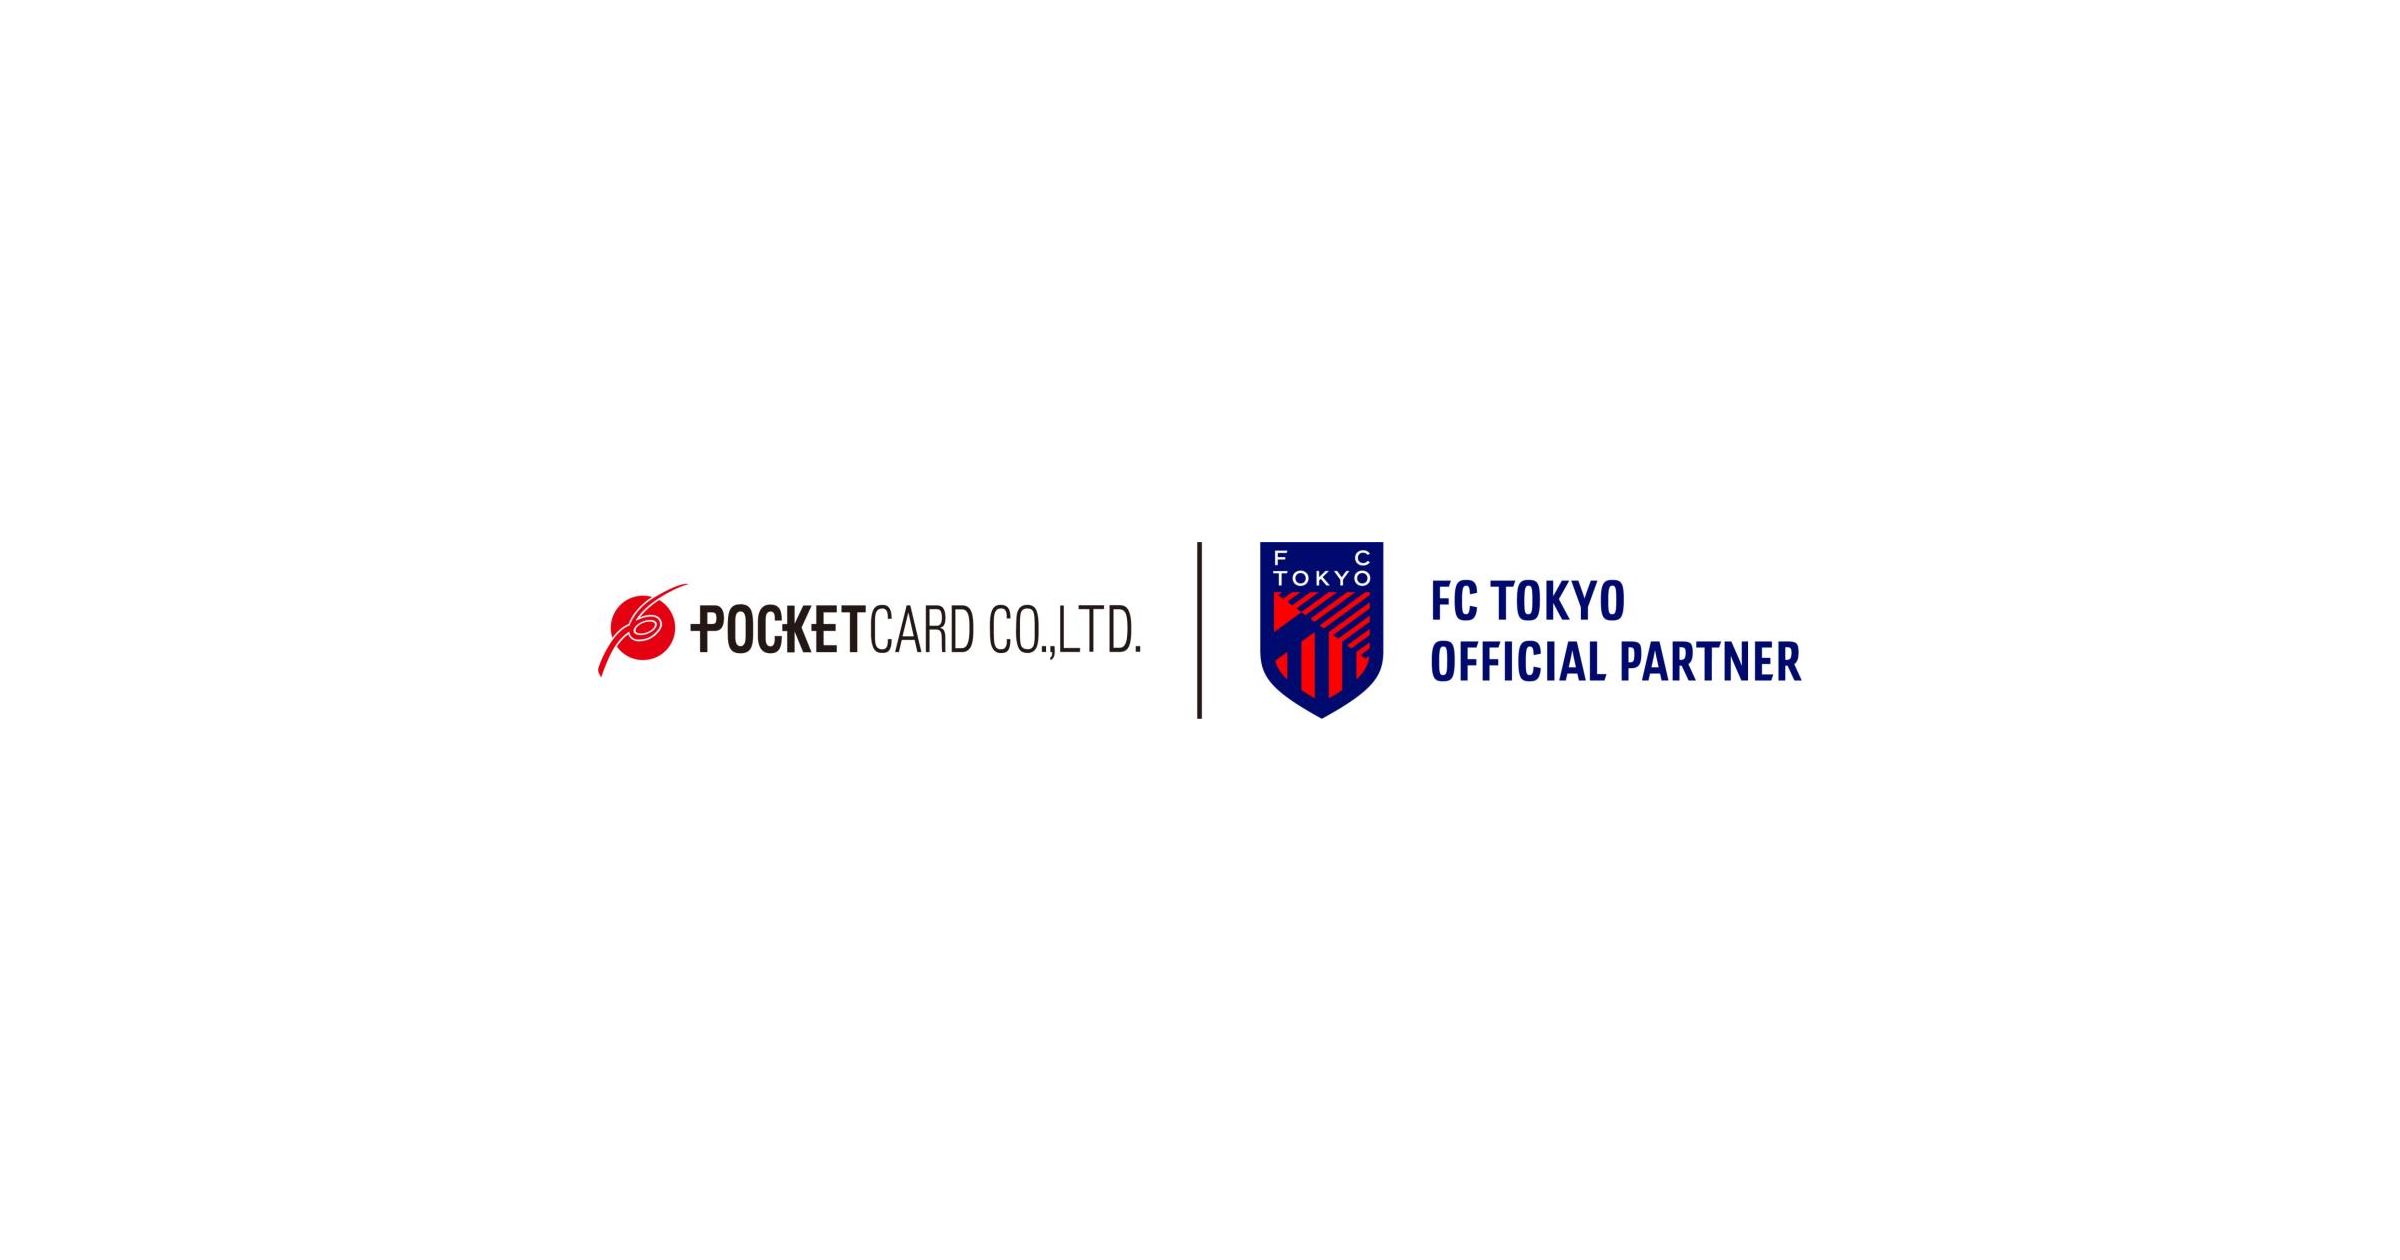 ポケットカード、FC東京とオフィシャルパートナー契約を締結　限定グッズがもらえるオリジナルクレジットカードの発行も